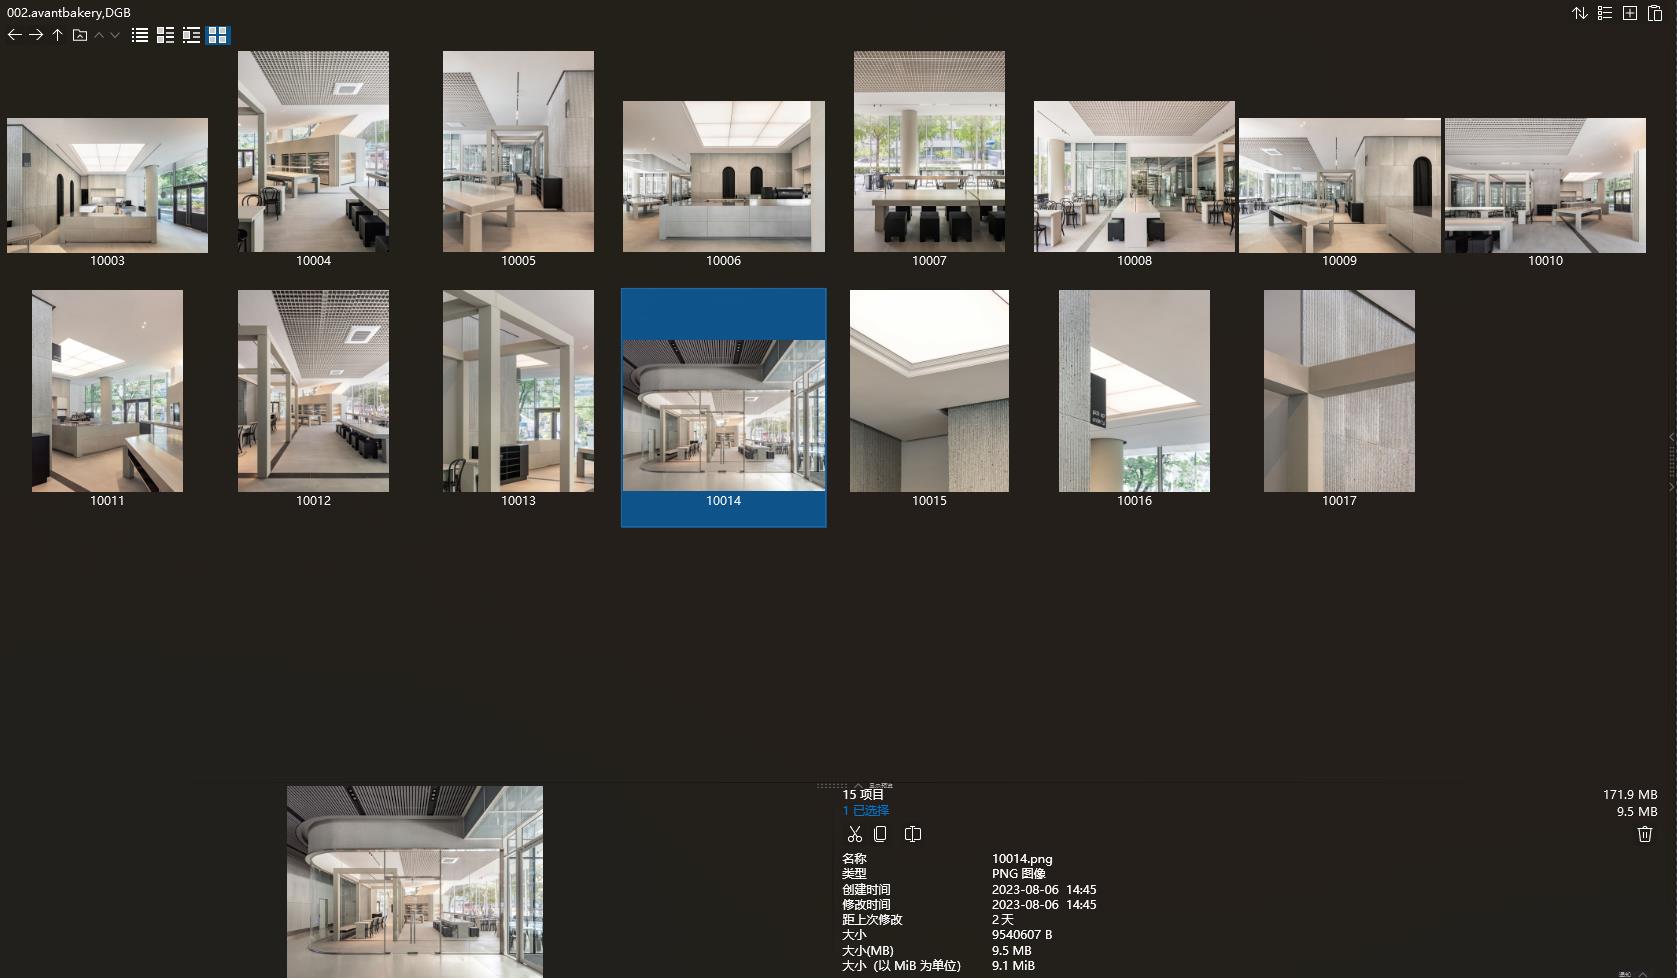 韩国,oftn studio设计案例,咖啡厅设计,韩国设计,零售店设计,oftn studio